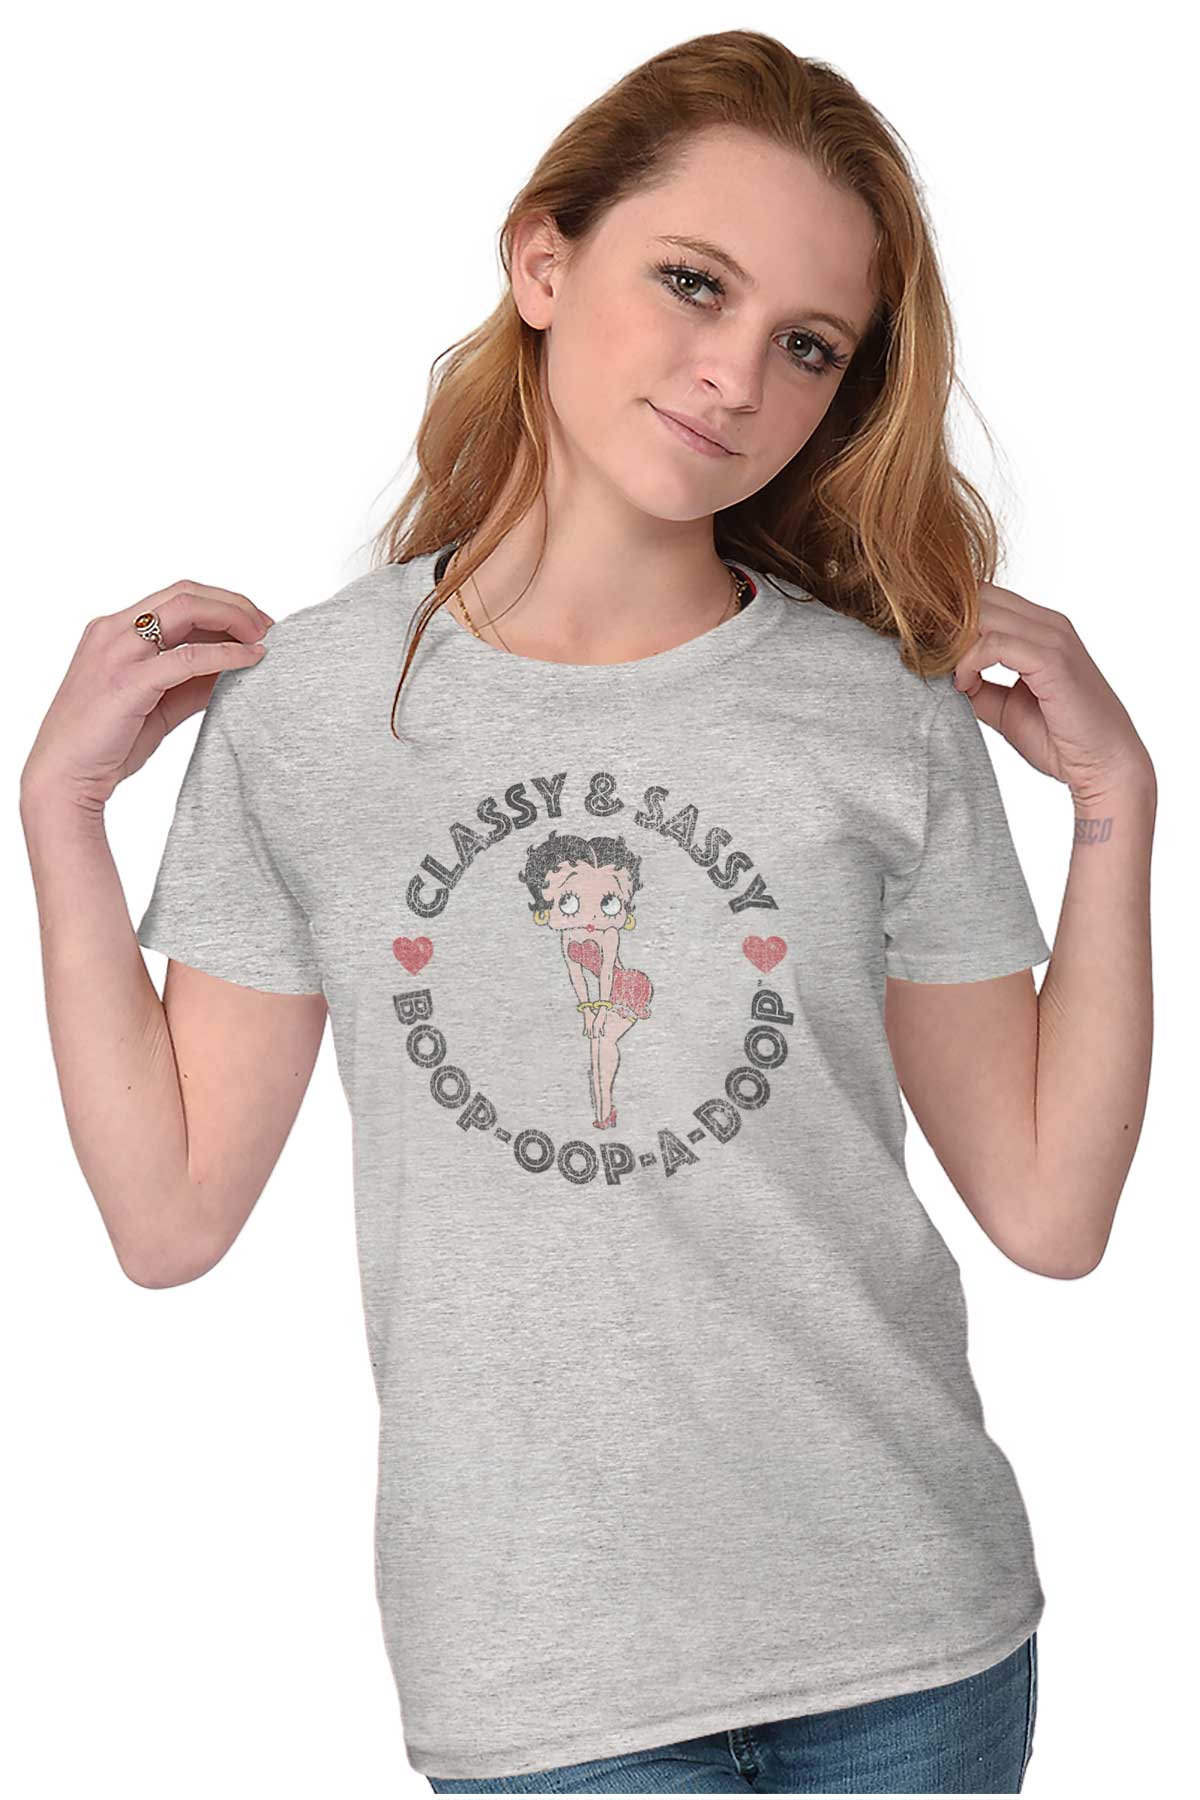 Classy Sassy Betty Boop Oop A Doop Vintage Womens Short Sleeve Ladies T